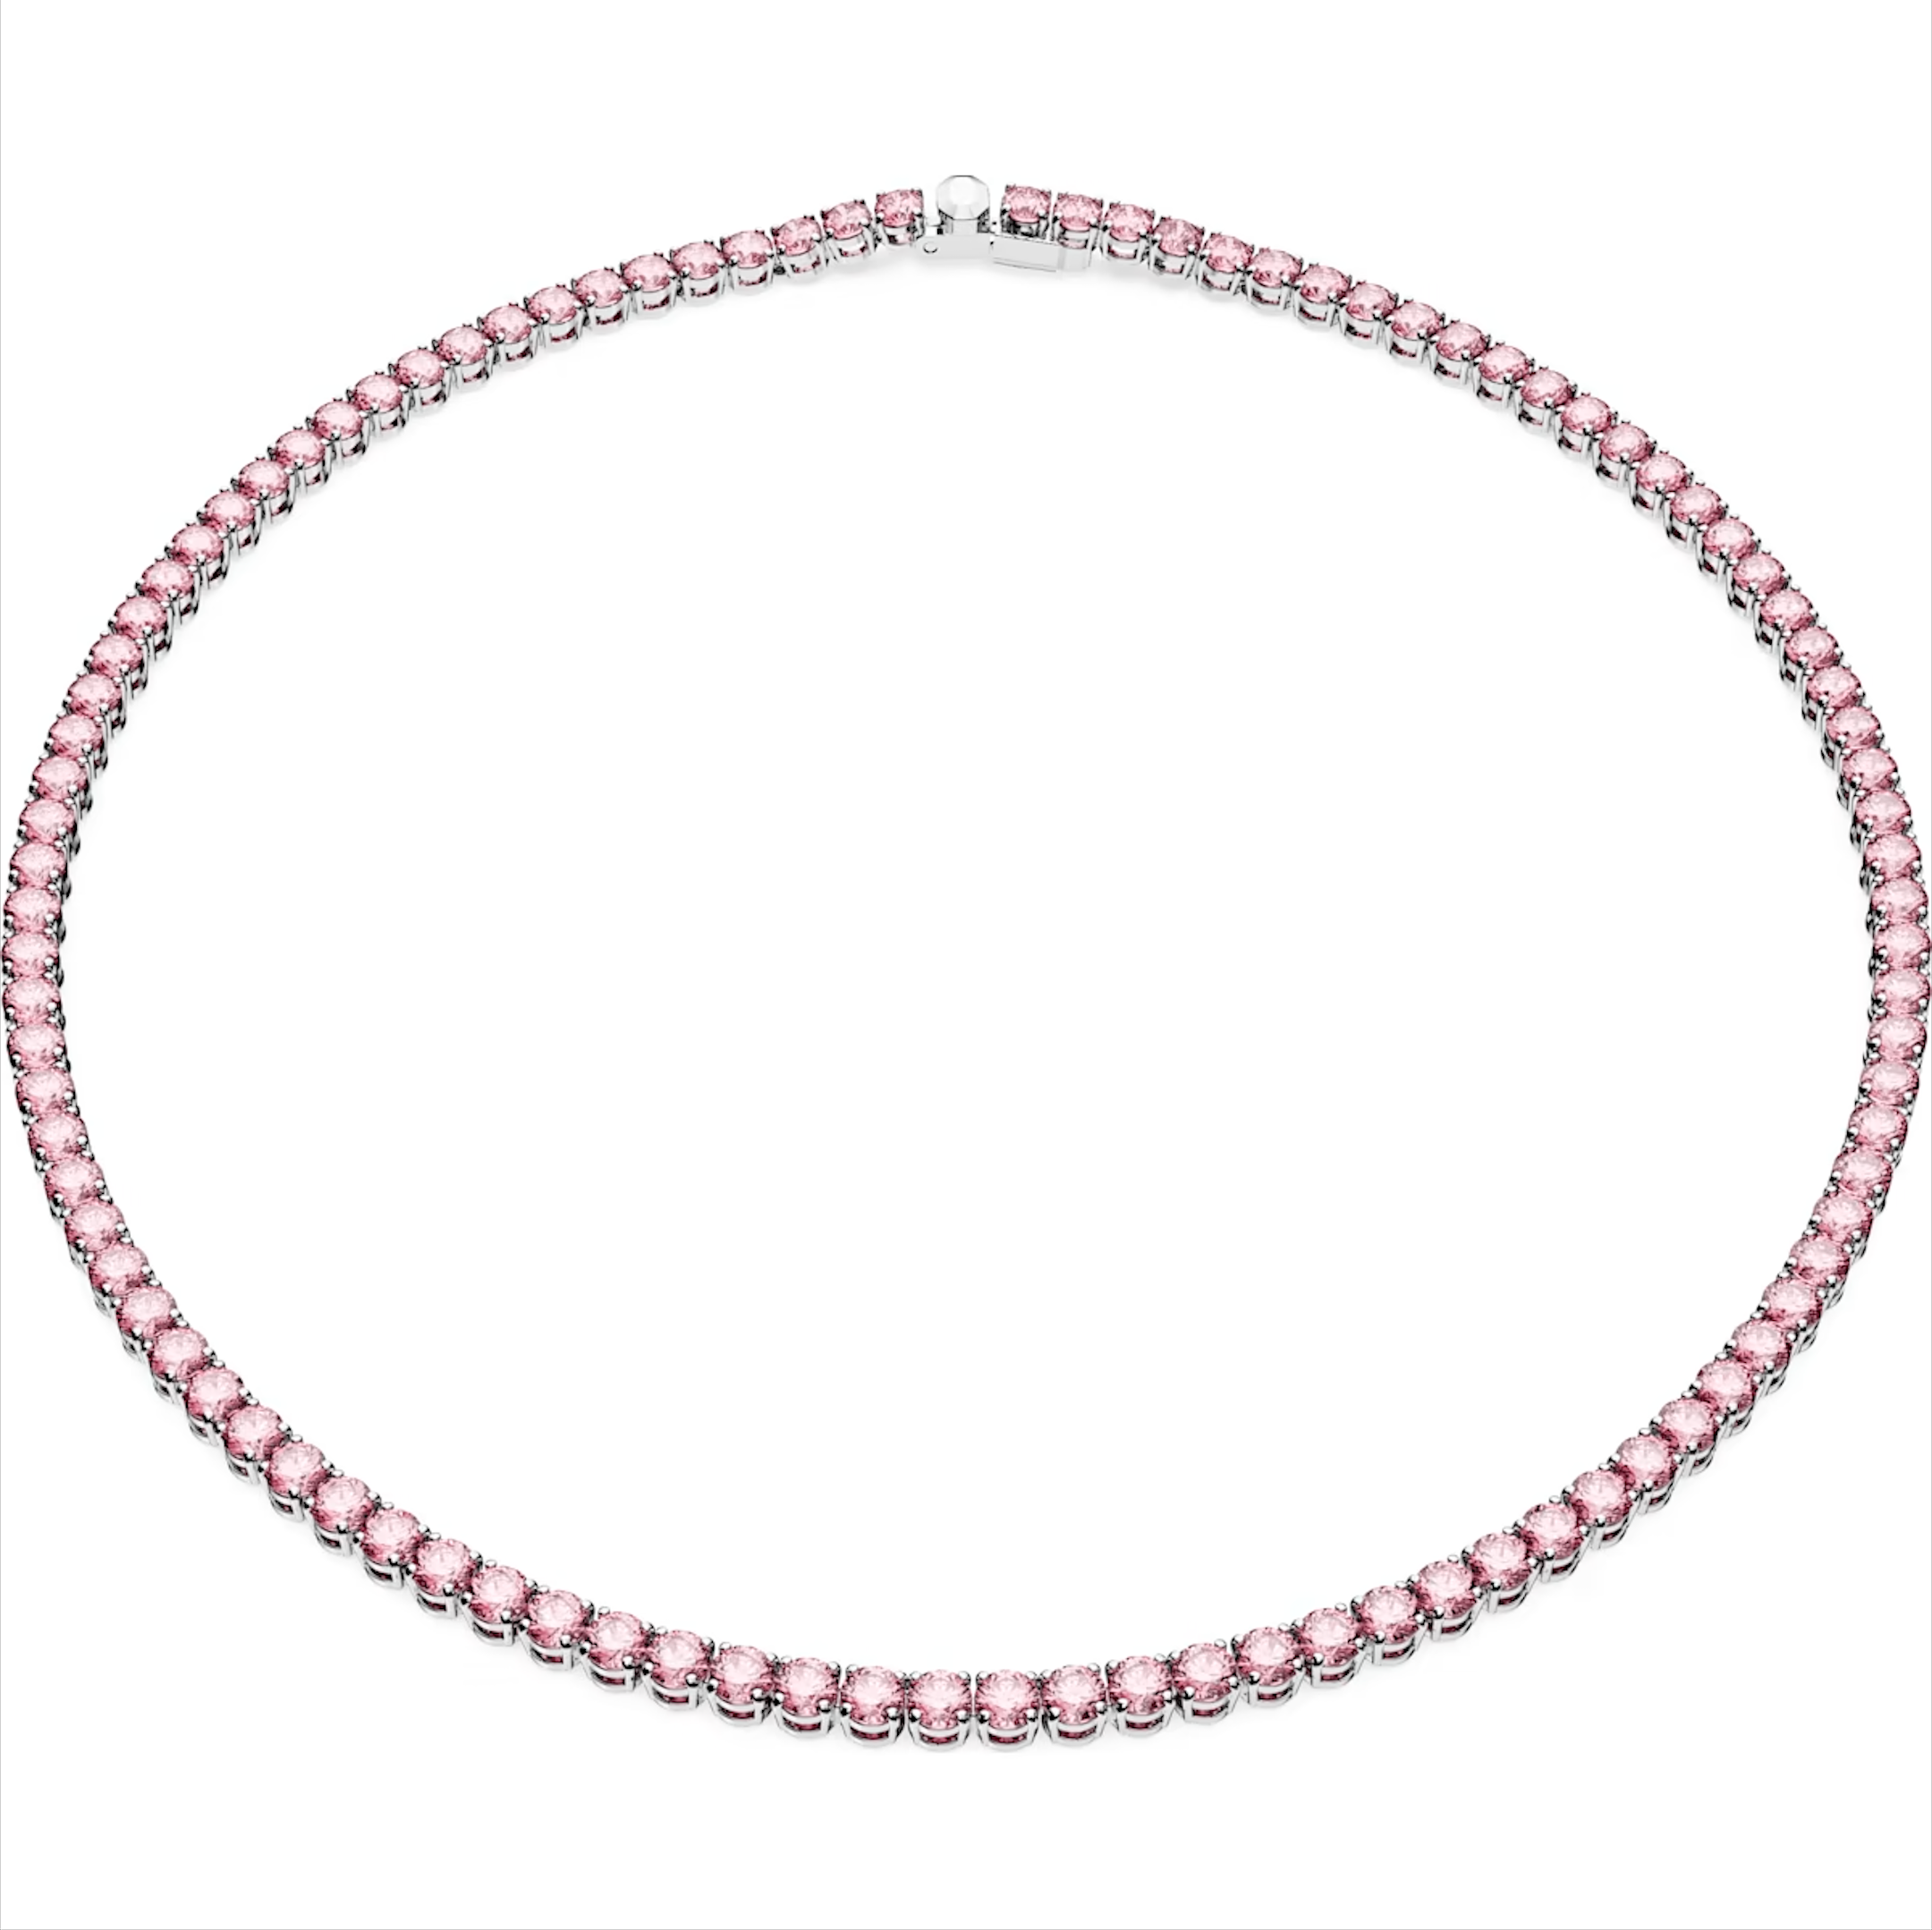 Swarovski Matrix Rhodium Plated Round Pink Crystal Tennis Necklace